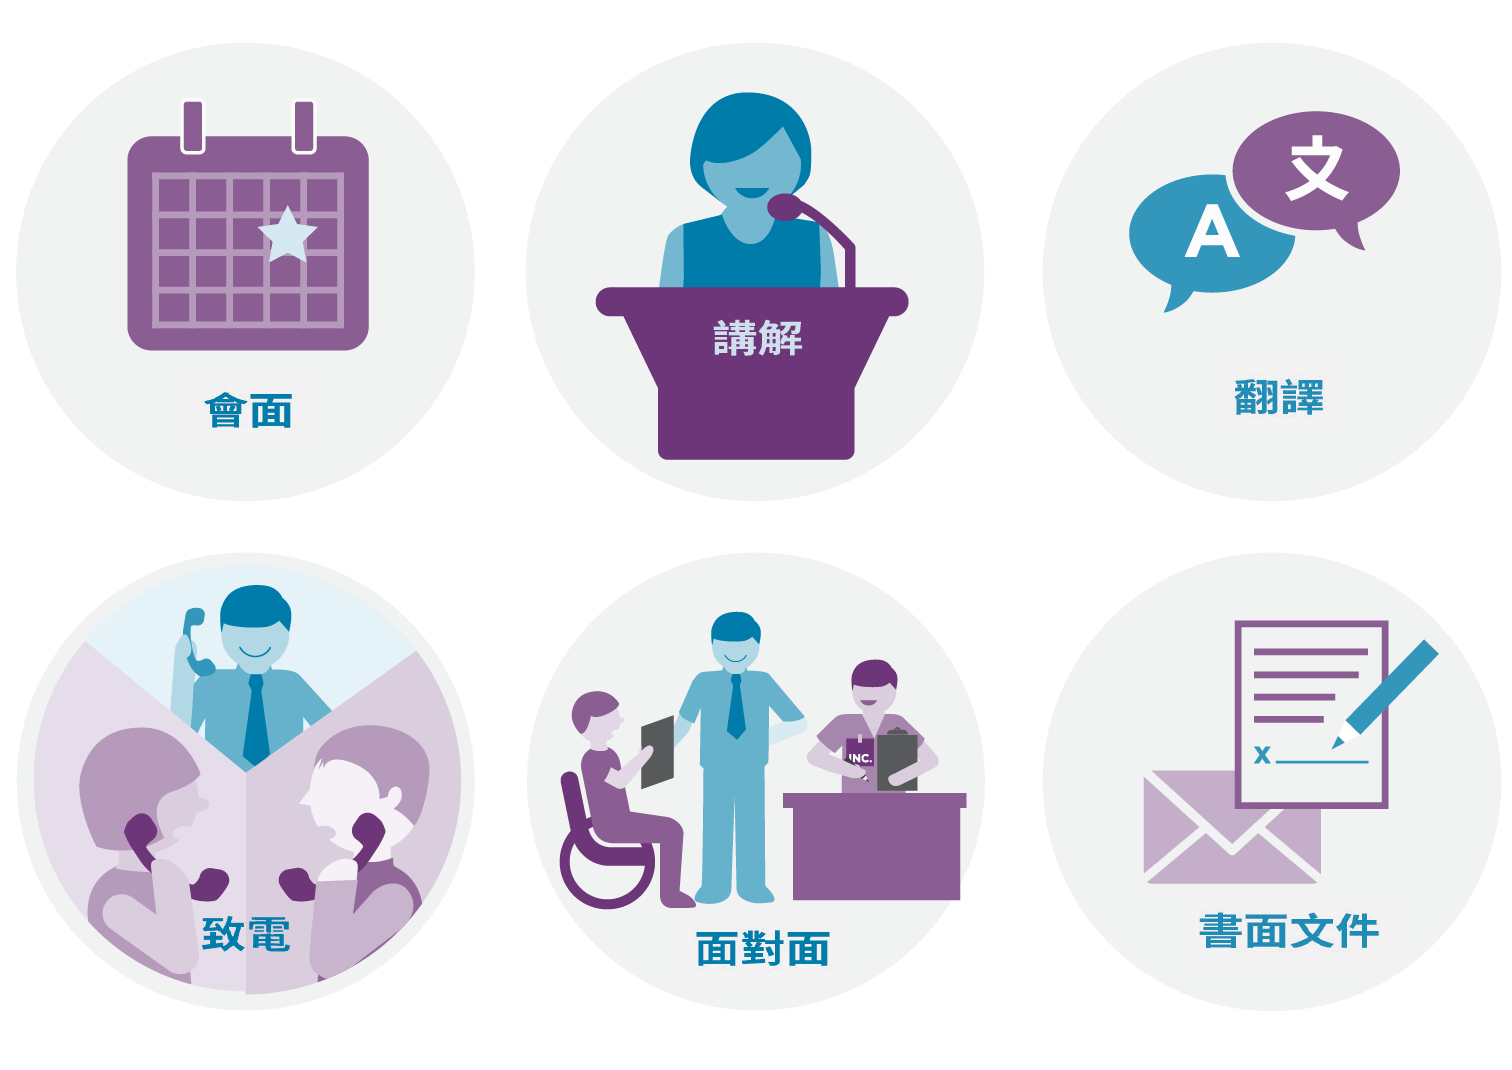 插圖，展示 ICAN 提供協助的不同方式：包括透過電話、書面、專人協助、當面協助、提供說明及翻譯。